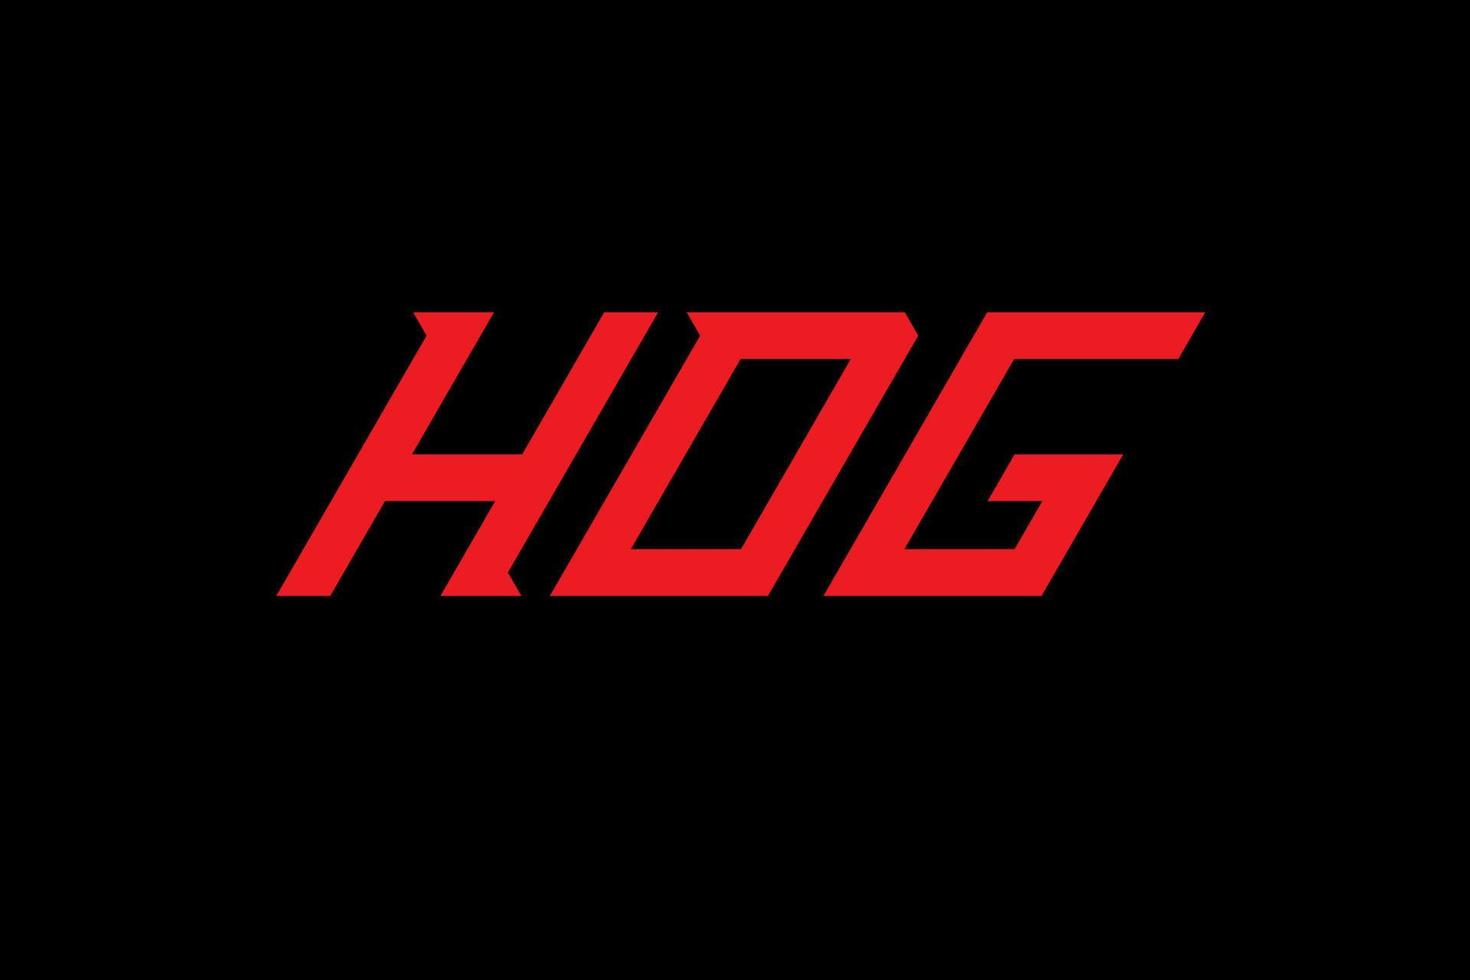 hdg brief en alfabet logo ontwerp vector